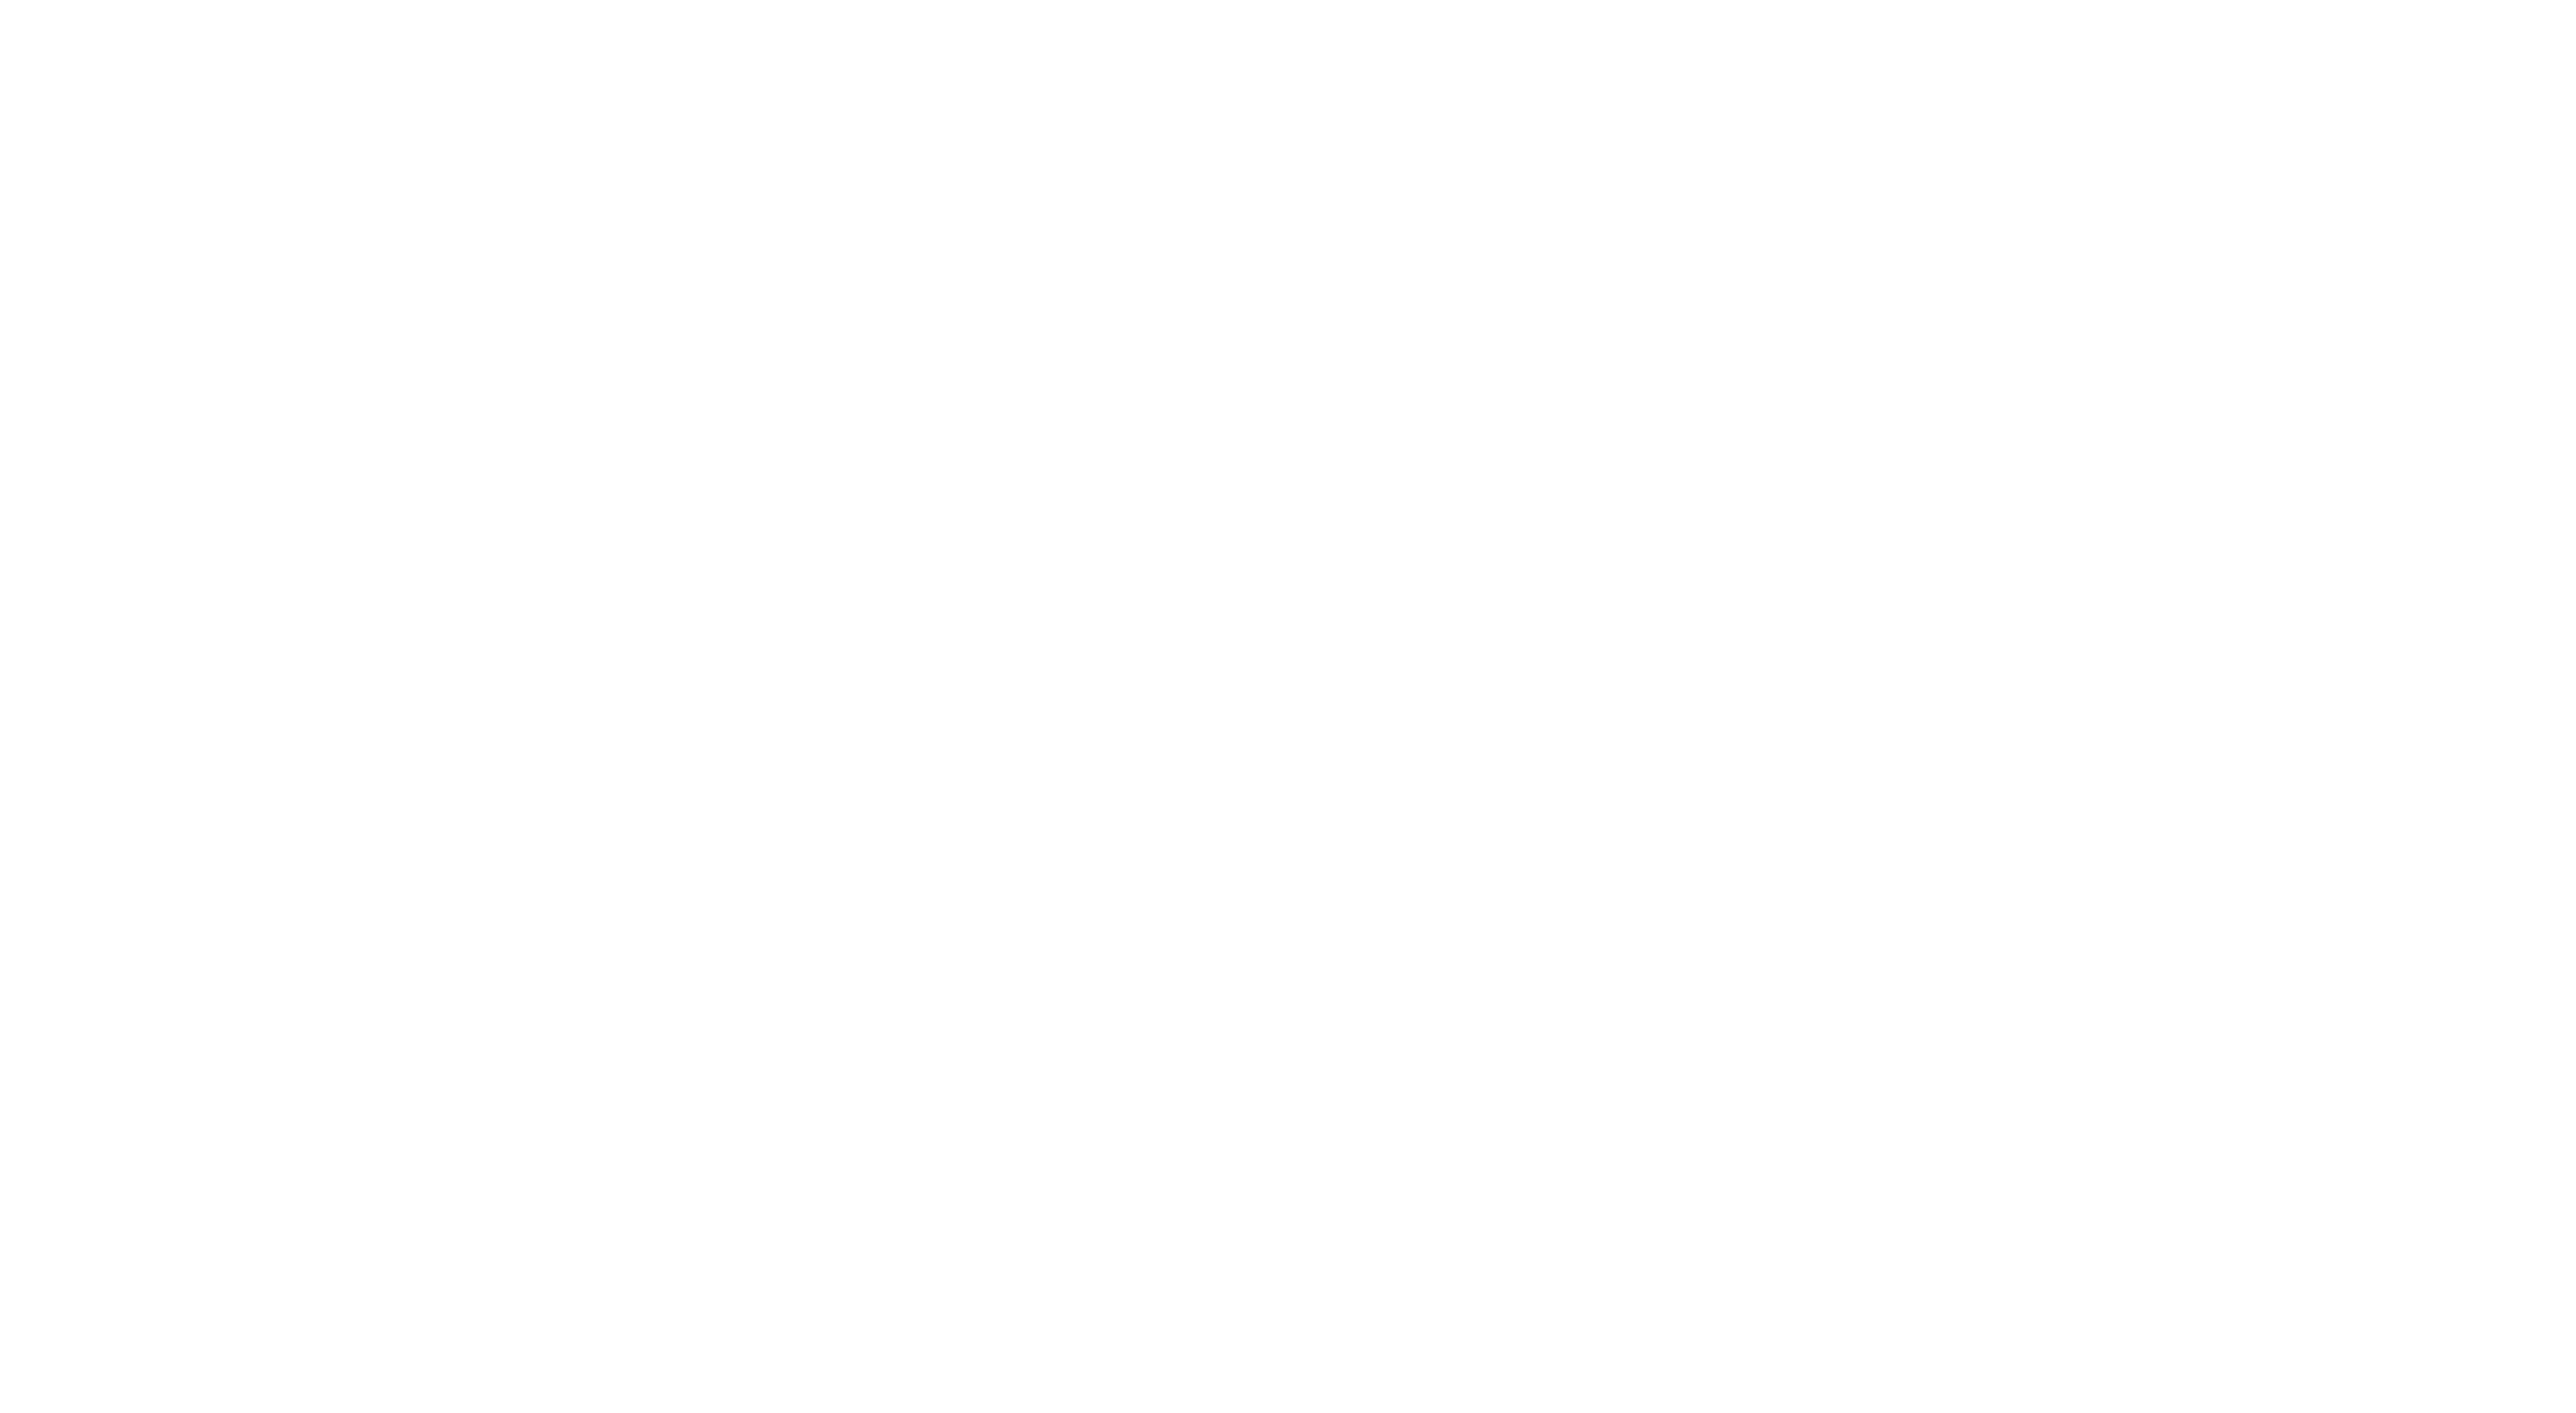 La Chance logo